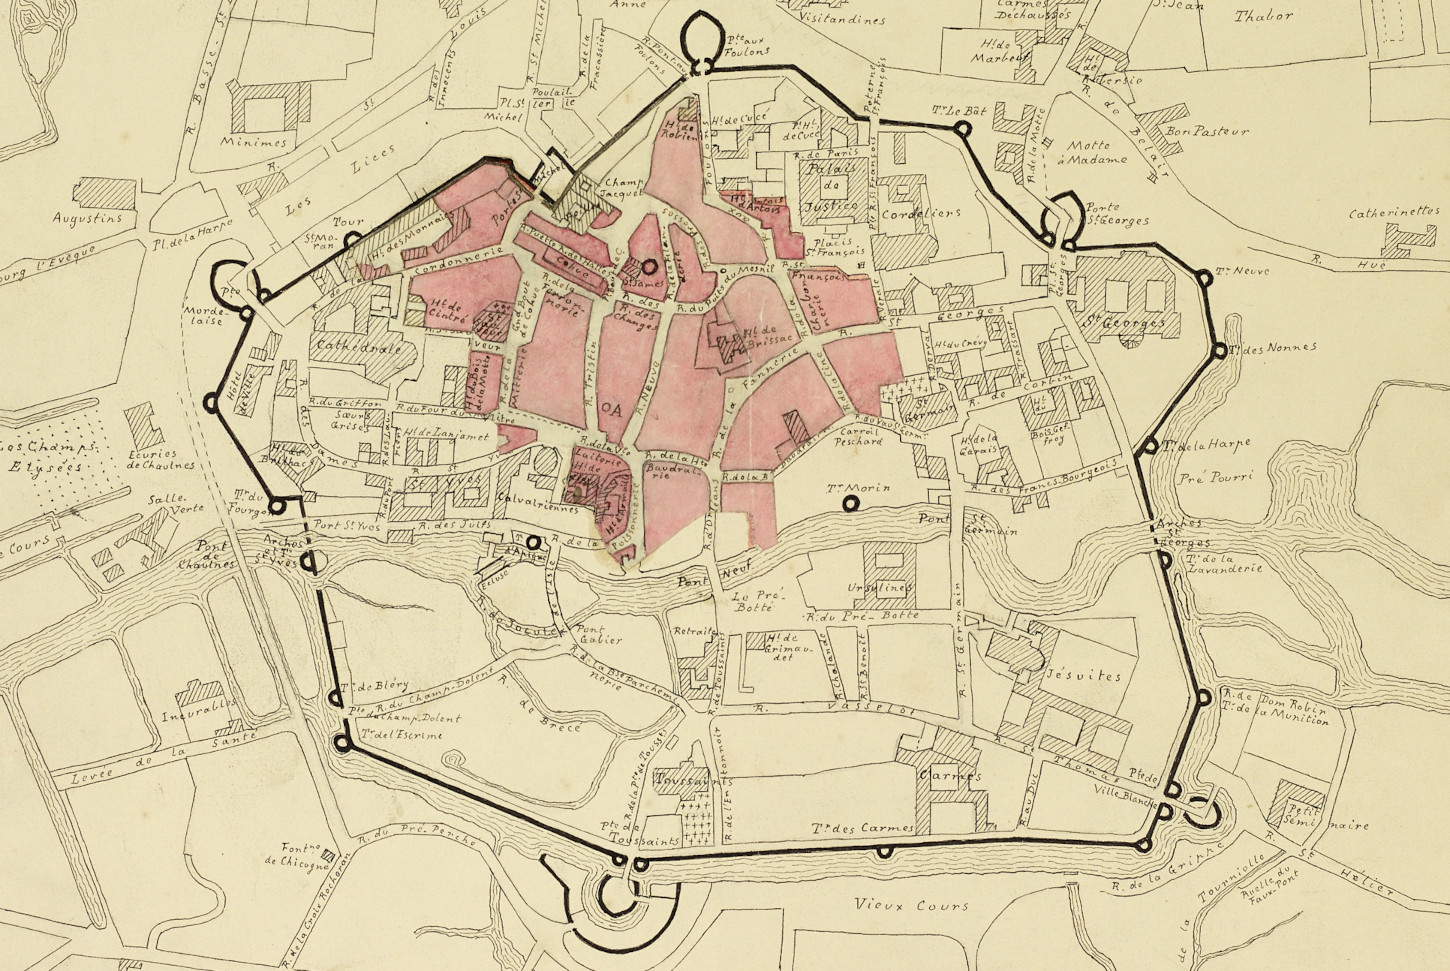 Plan de Rennes avant le grand incendie de 1720 réalisé par Paul Banéat (1856 - 1942). La lettre "A" marque le point de départ de l'incendie. Musée de Bretagne :  2018.0000.1473.